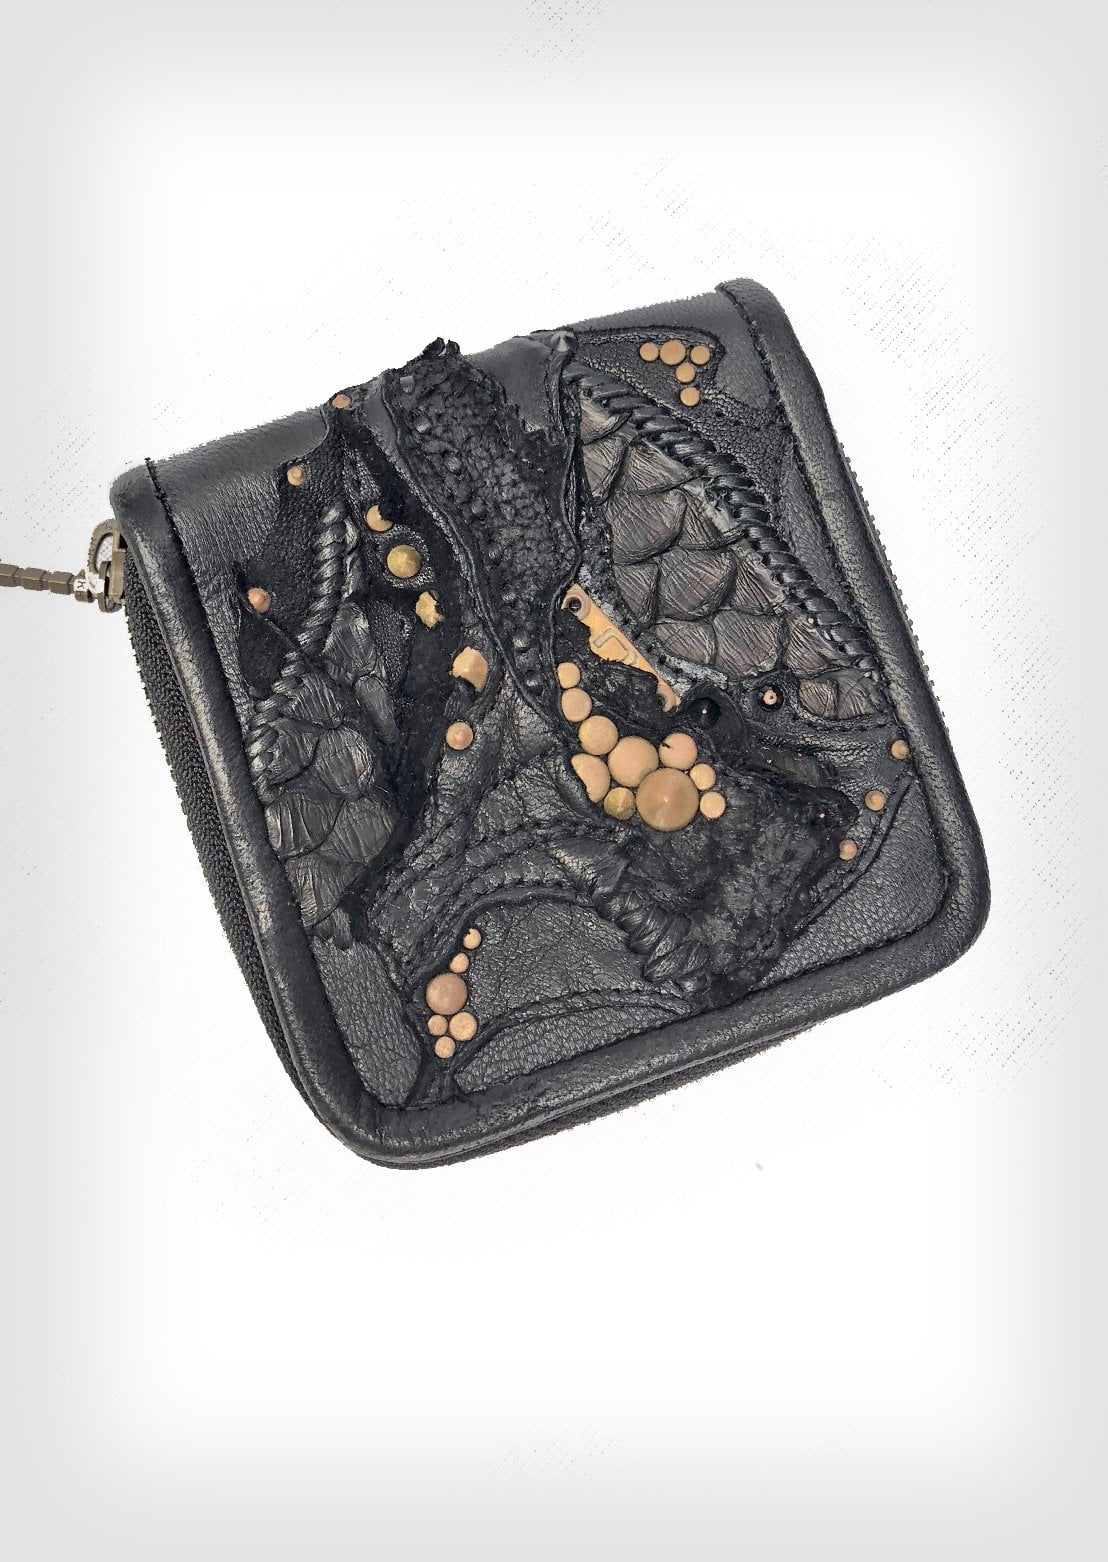 Unique leather wallet